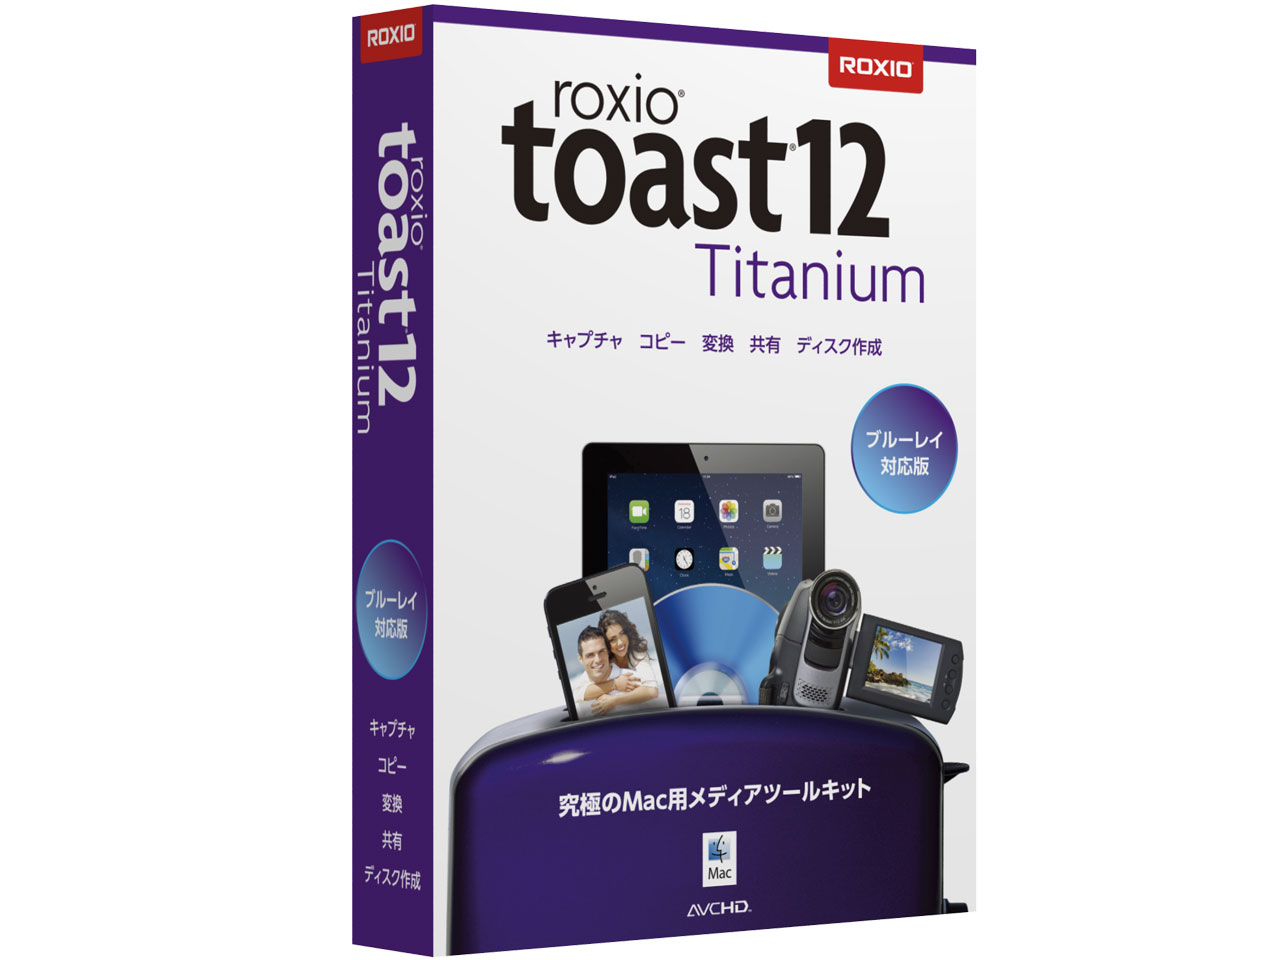 toast titanium 7.1